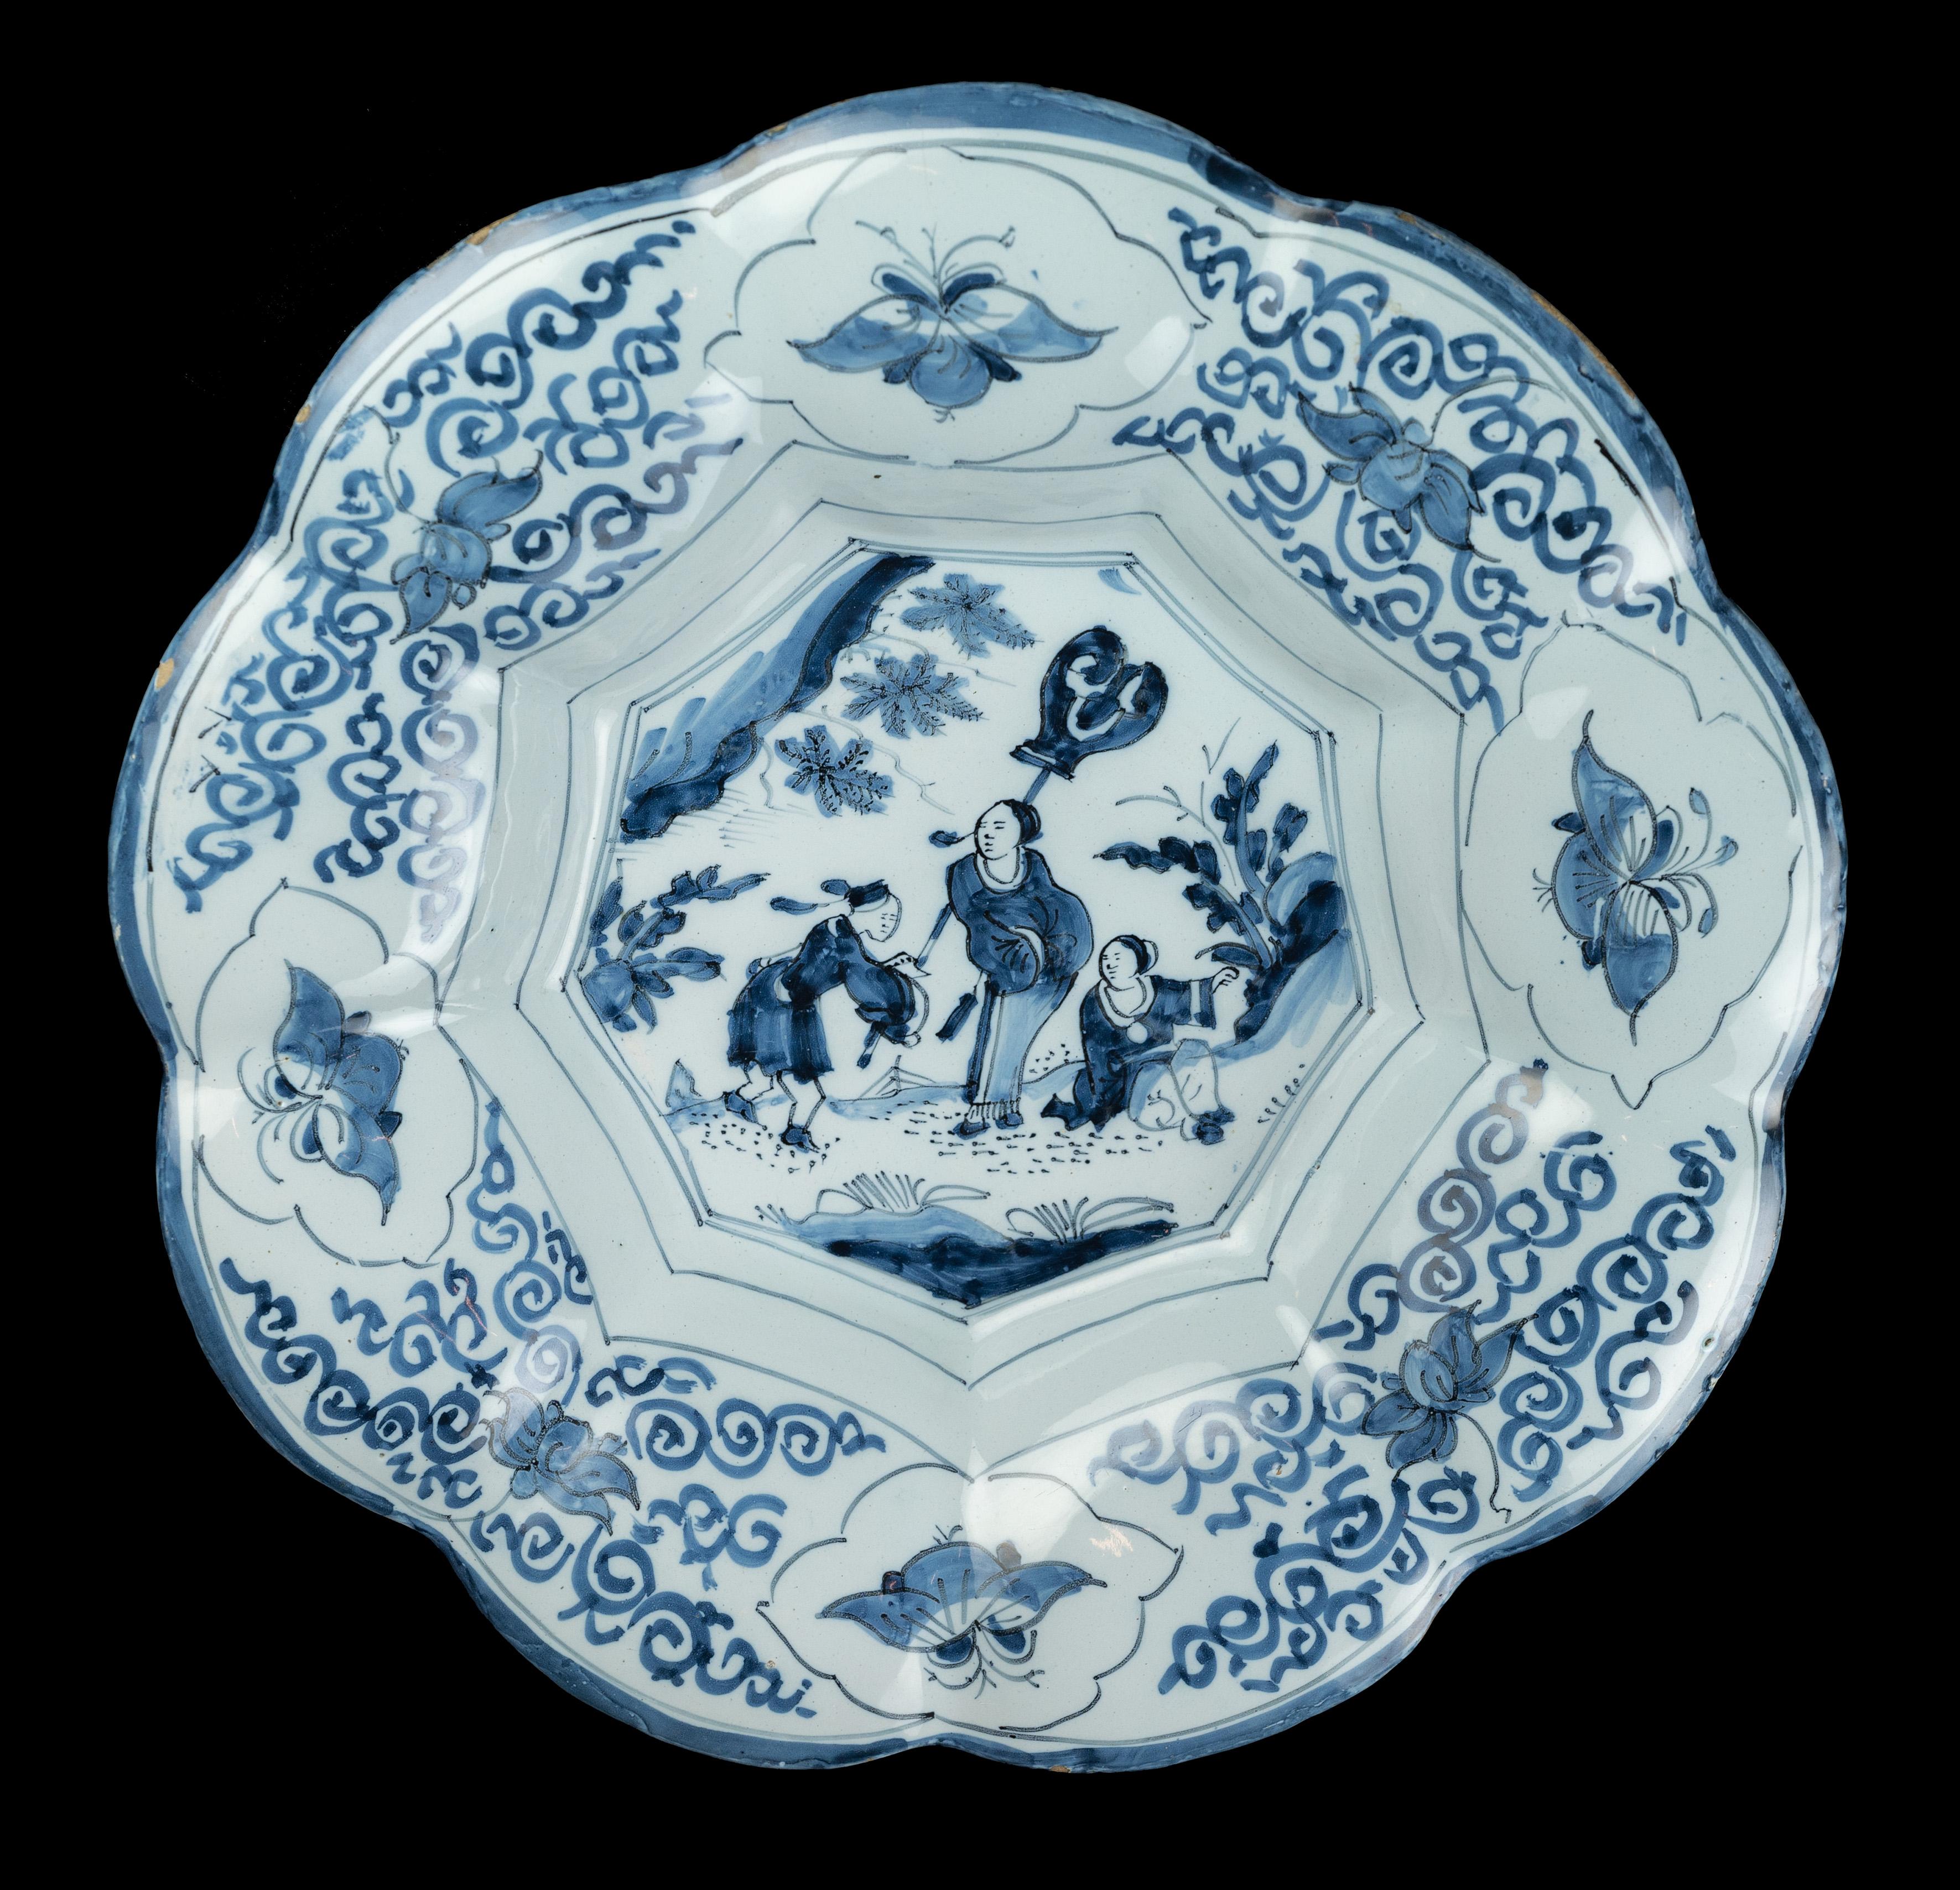 Plat lobé en chinoiserie bleue et blanche. Delft, 1680-1700 
Dimensions : diamètre 35 cm / 13.77 in. 

Le plat lobé bleu et blanc est composé de neuf lobes larges autour d'un centre à neuf plis et est peint d'un décor de chinoiserie, encadré de